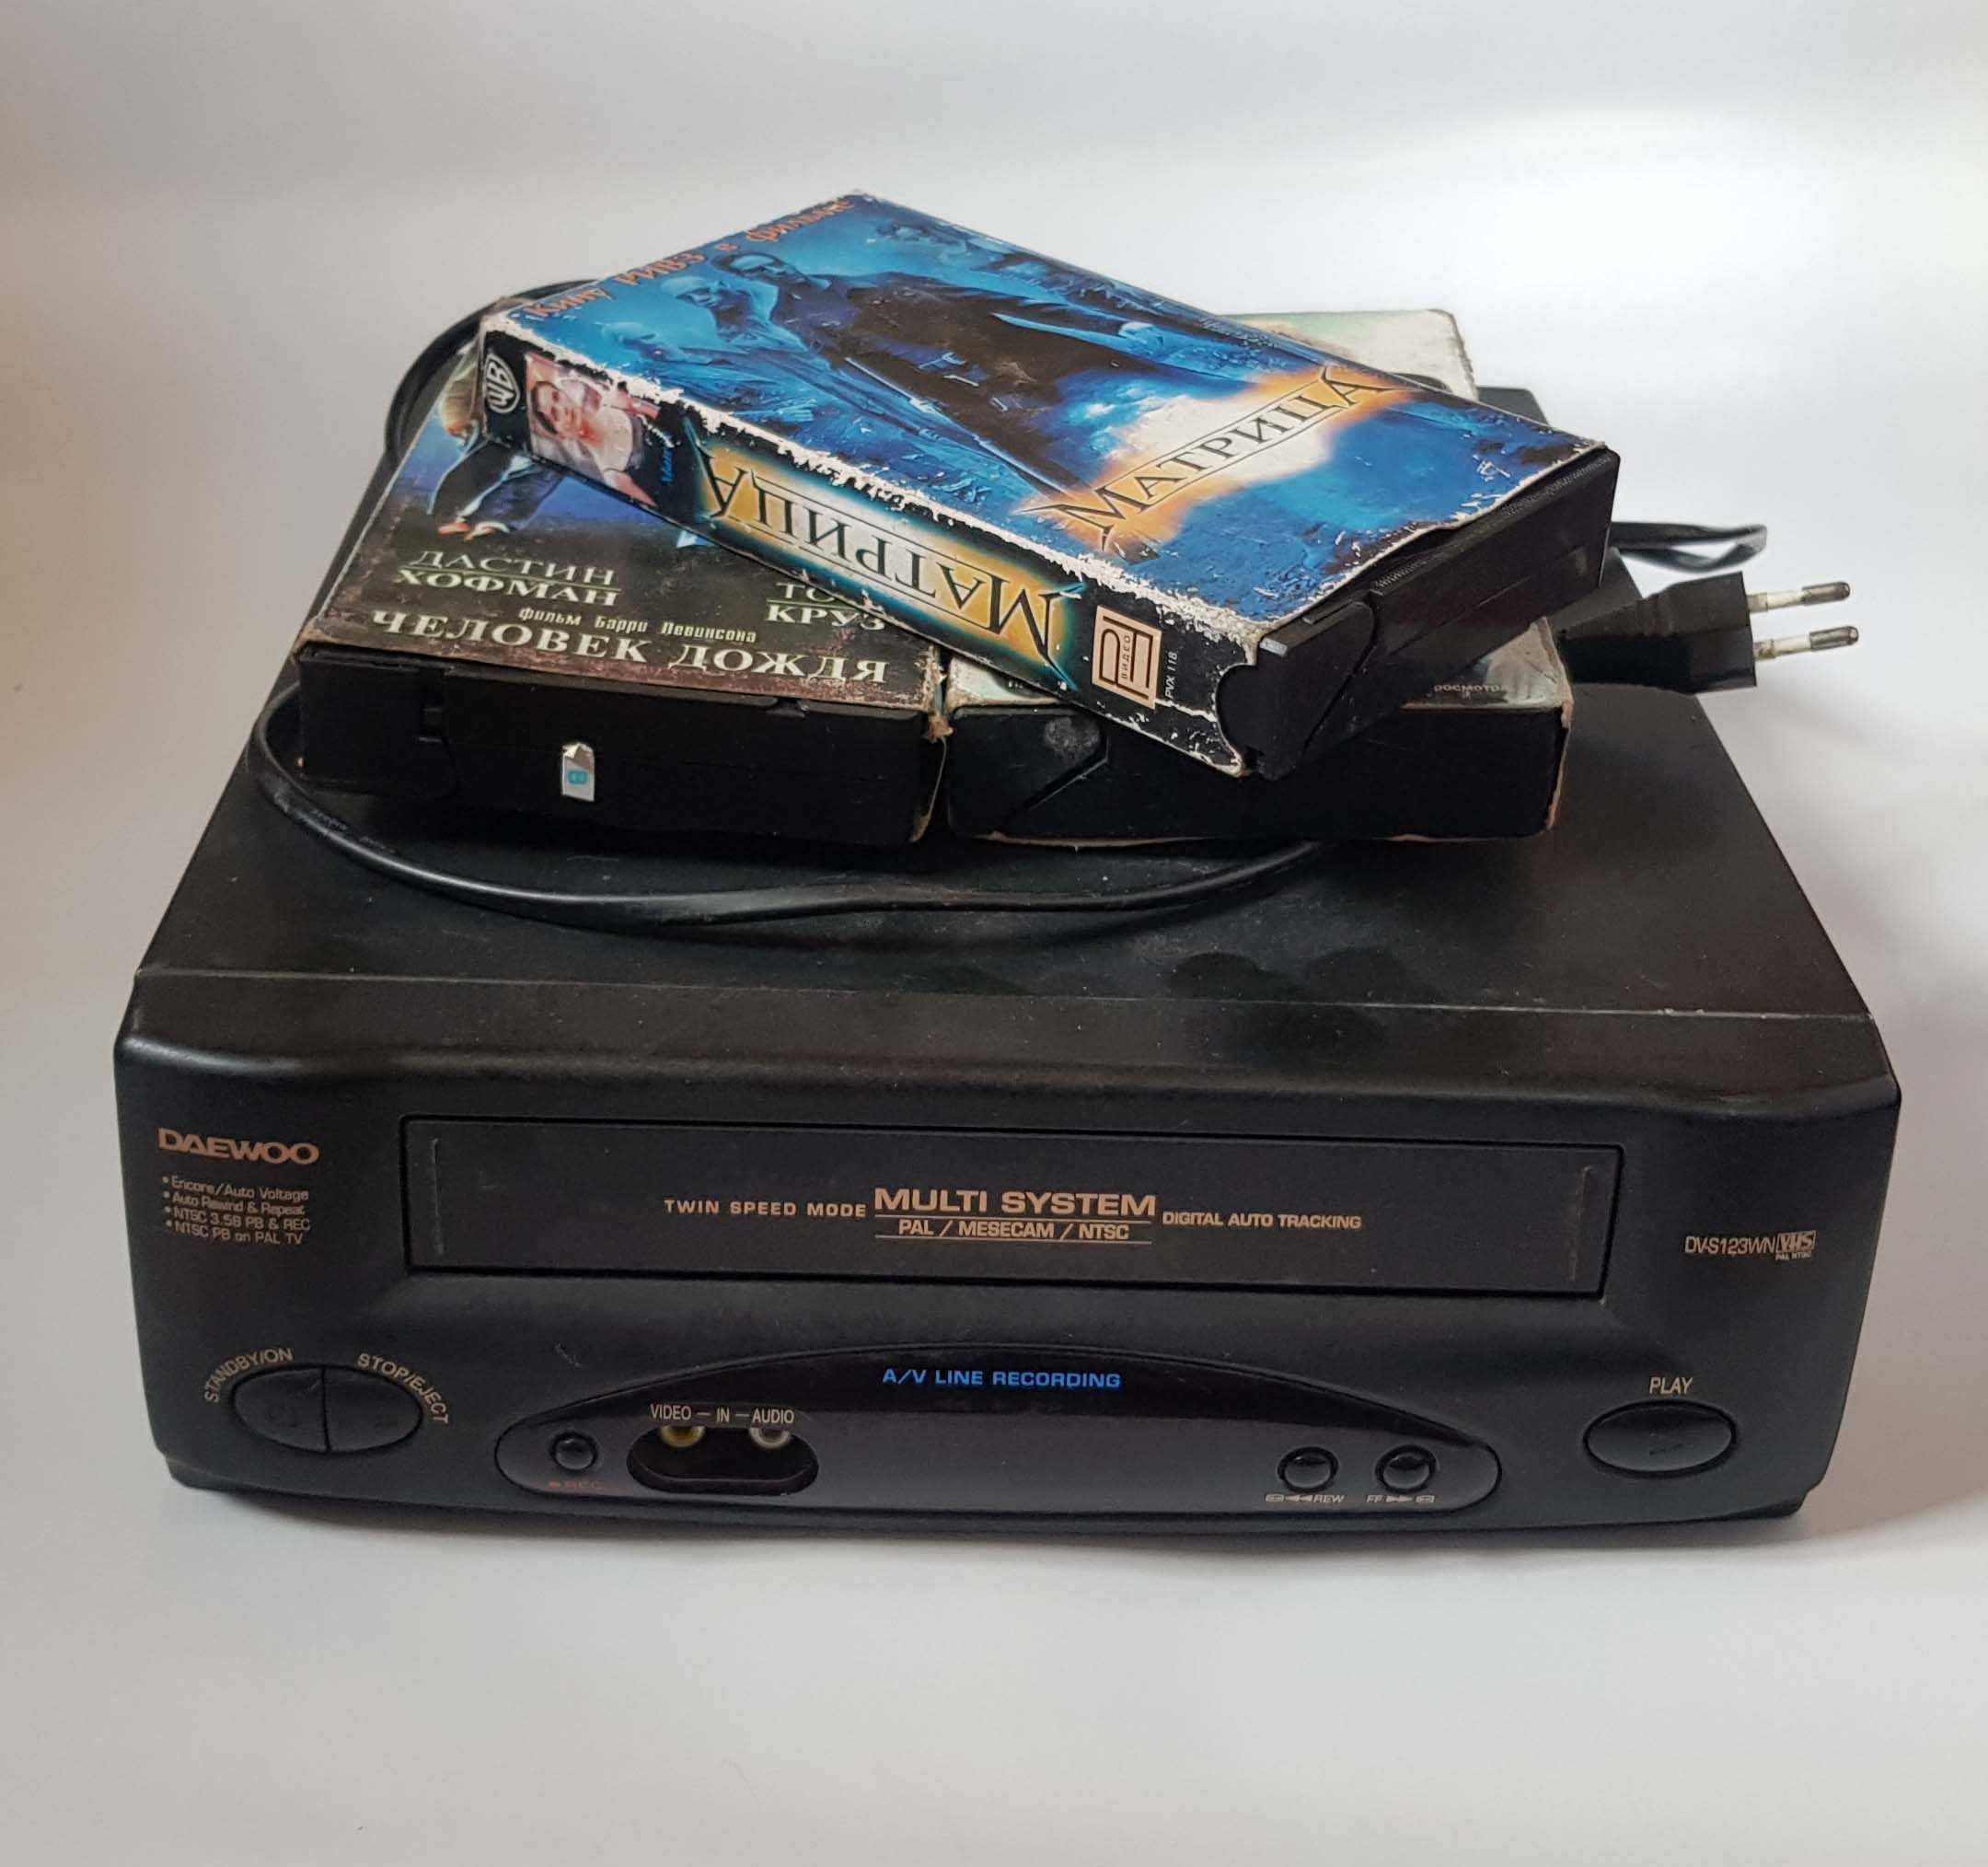 Приму в подарунок старий відеомагнітофон VHS на касетах